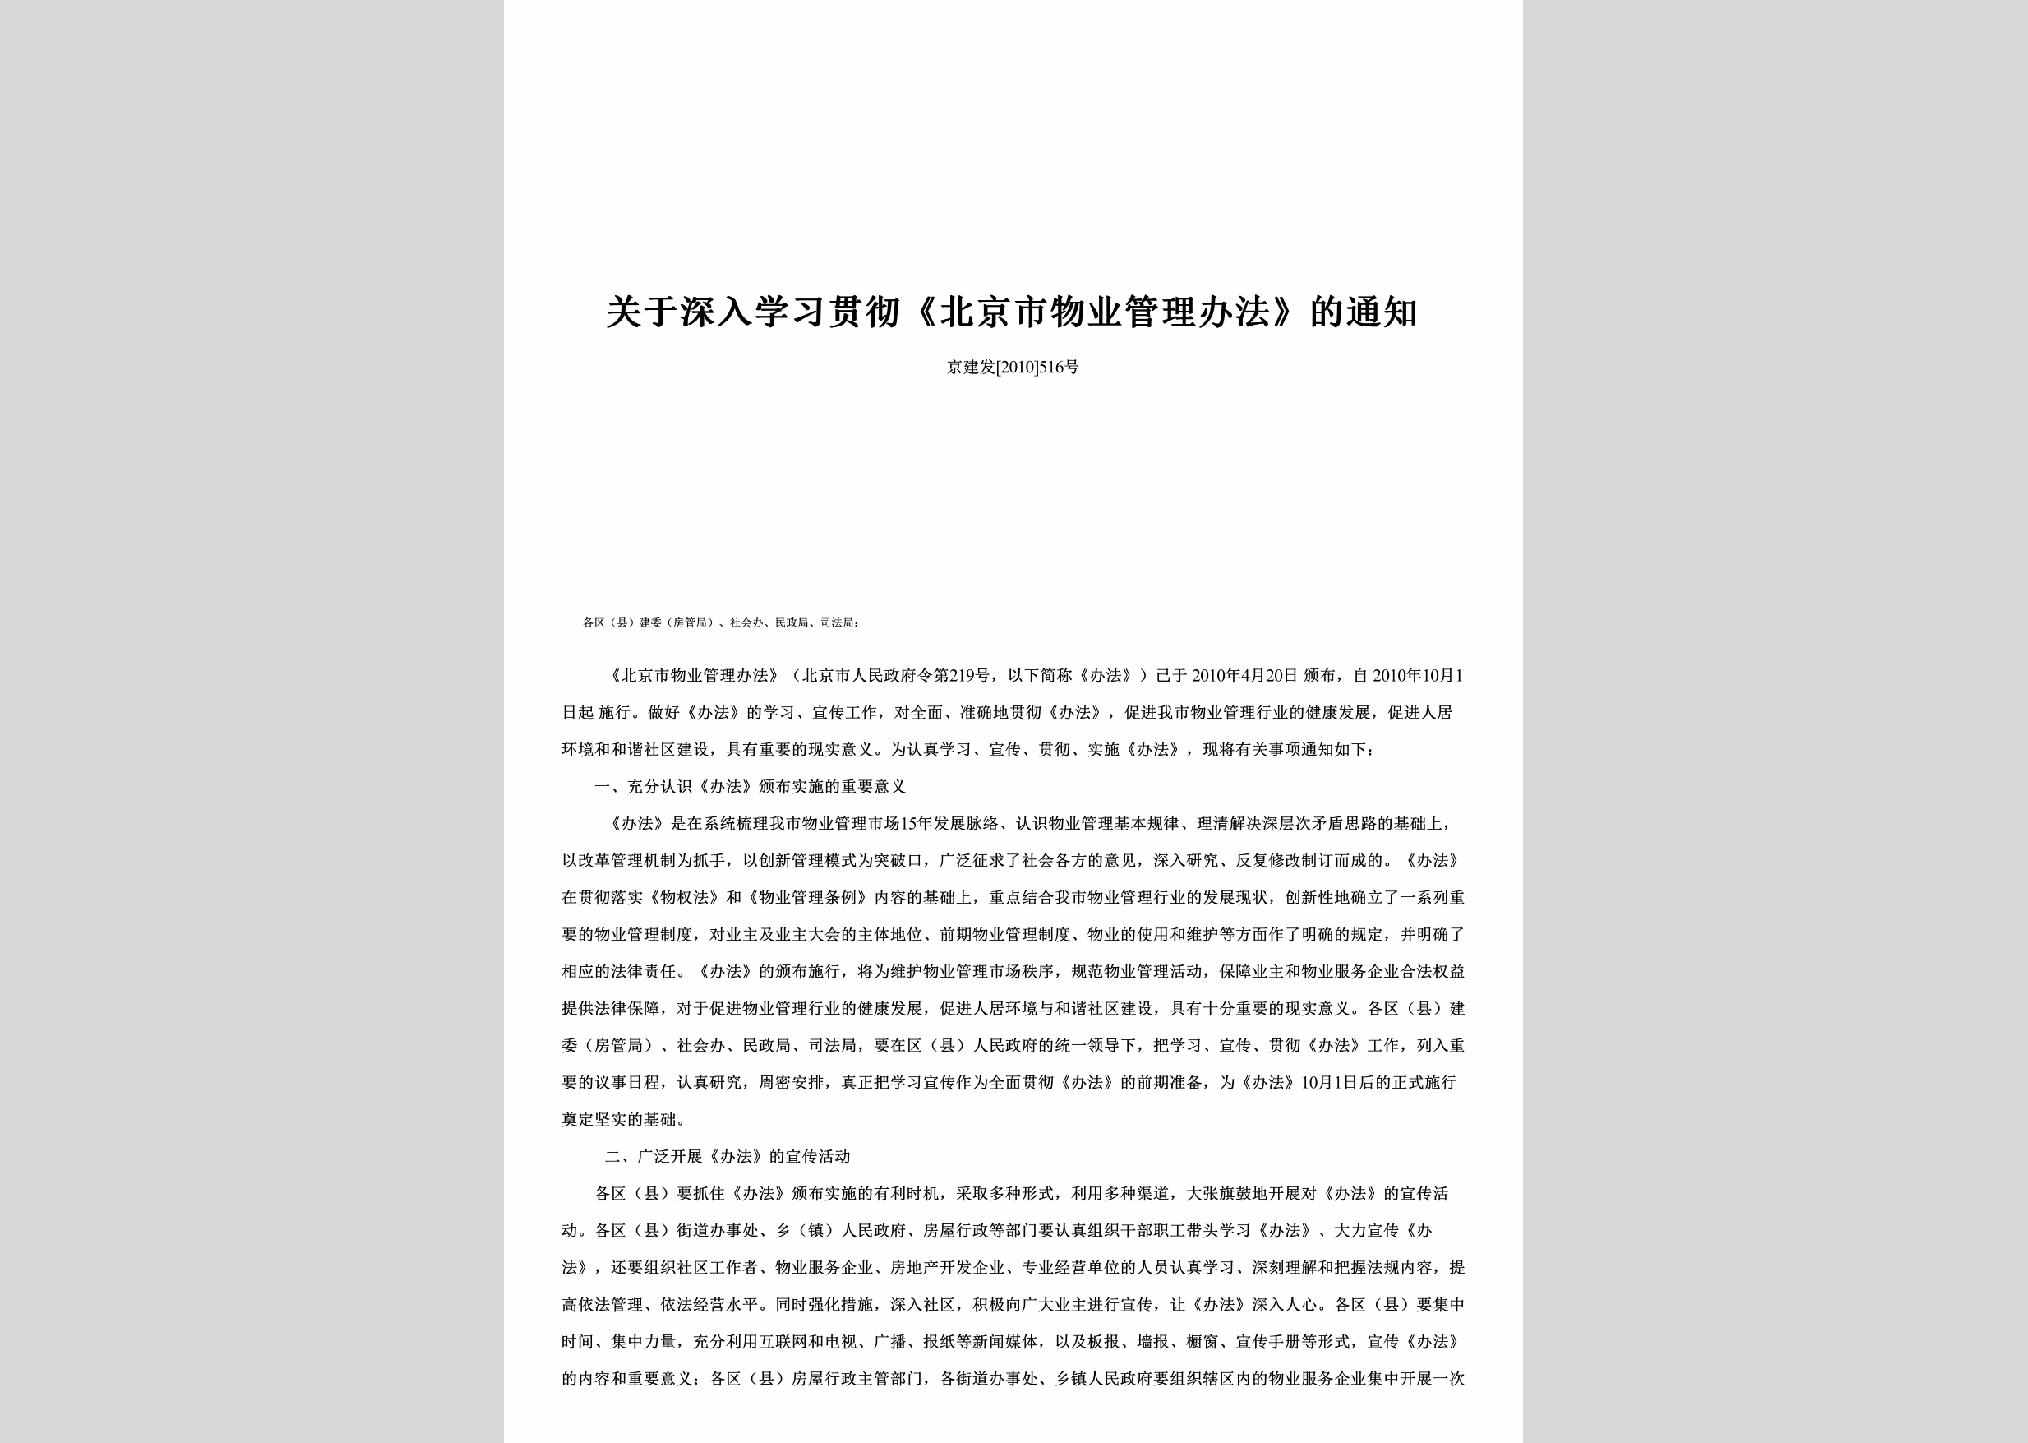 京建发[2010]516号：关于深入学习贯彻《北京市物业管理办法》的通知